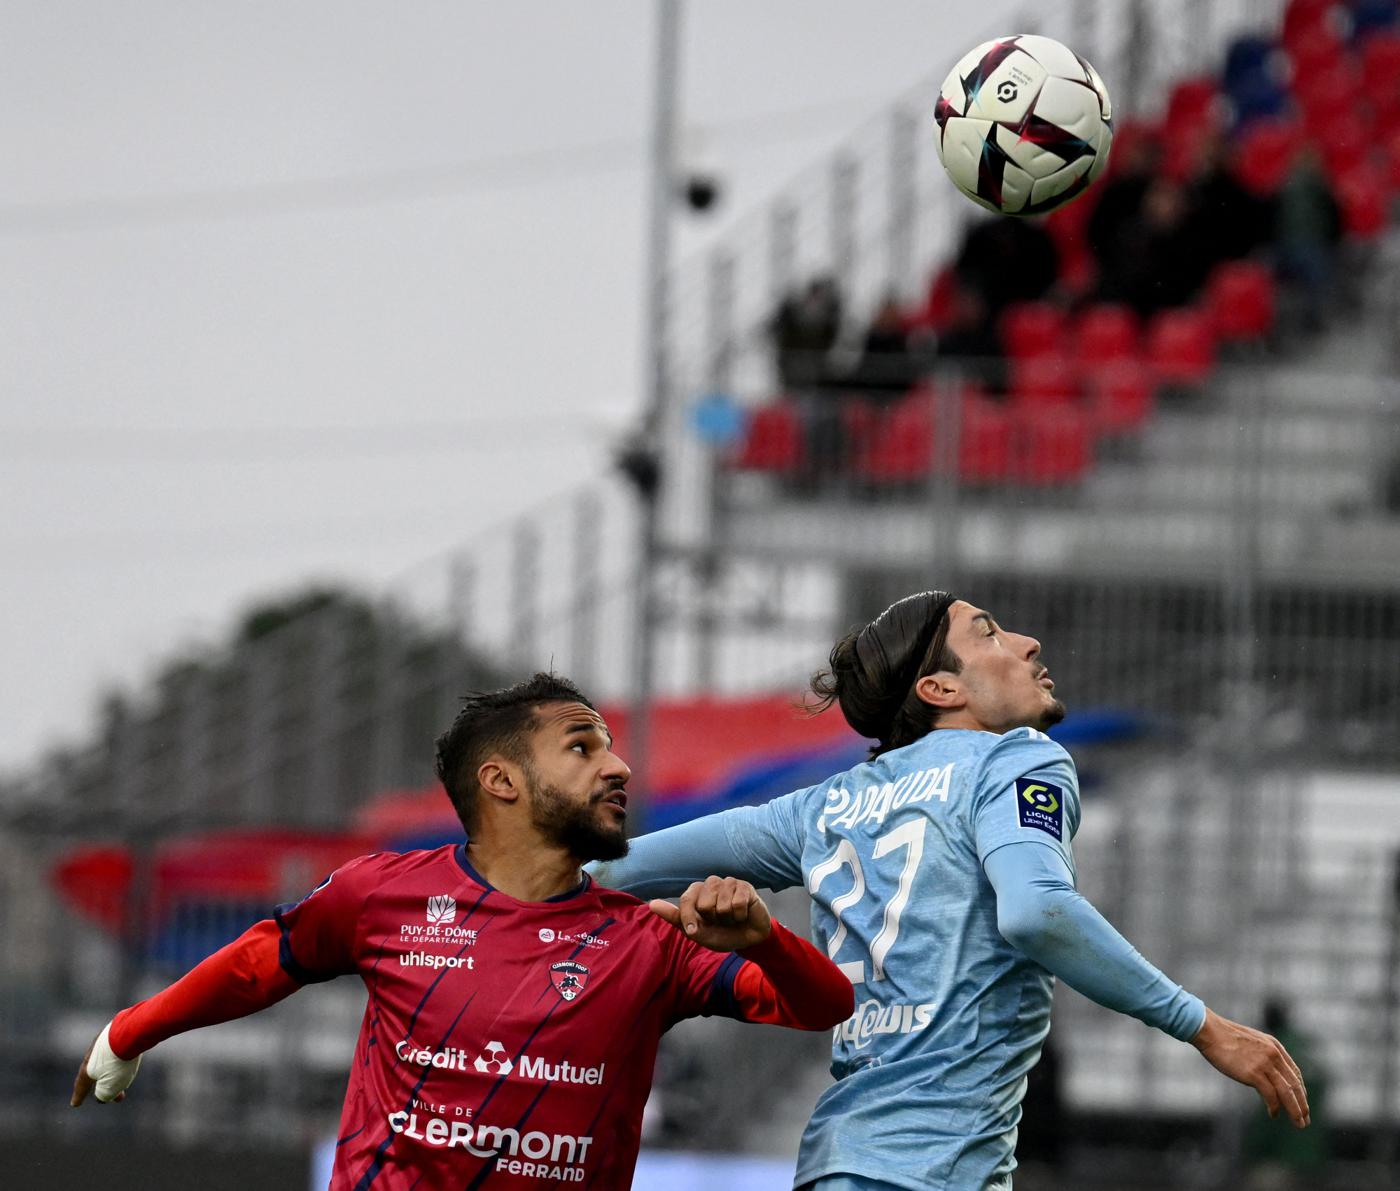 Clermont - Ajaccio - 2:1. Französische Meisterschaft, 29. Runde. Spielbericht, Statistiken